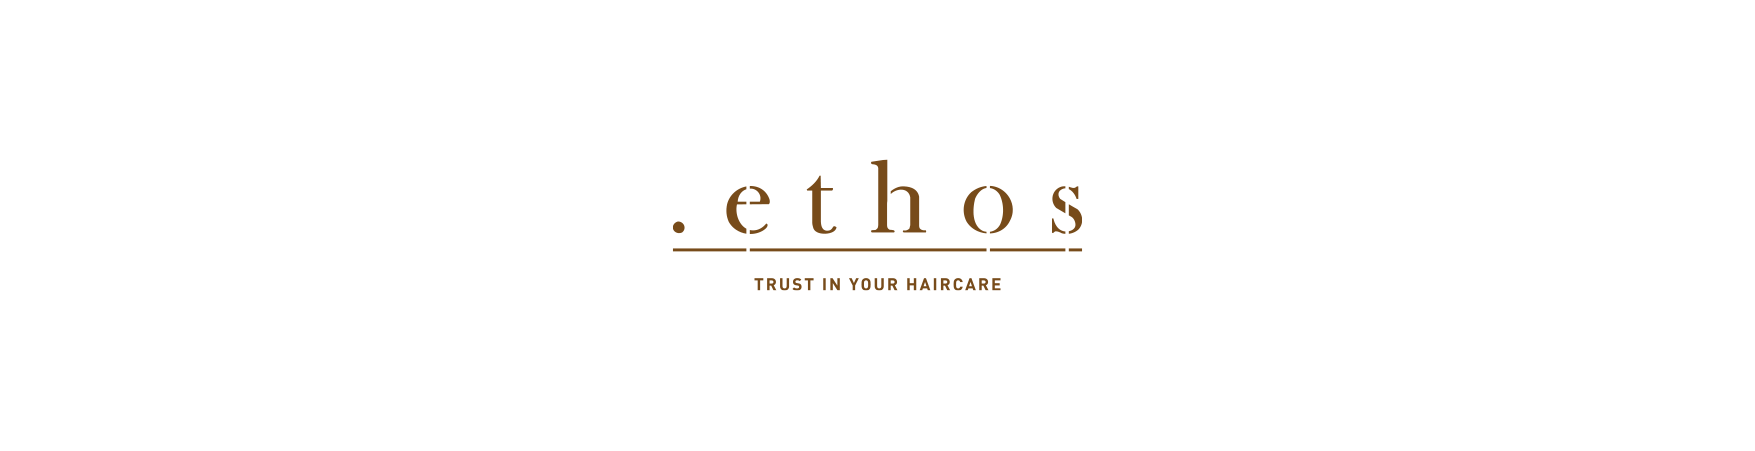 ethos